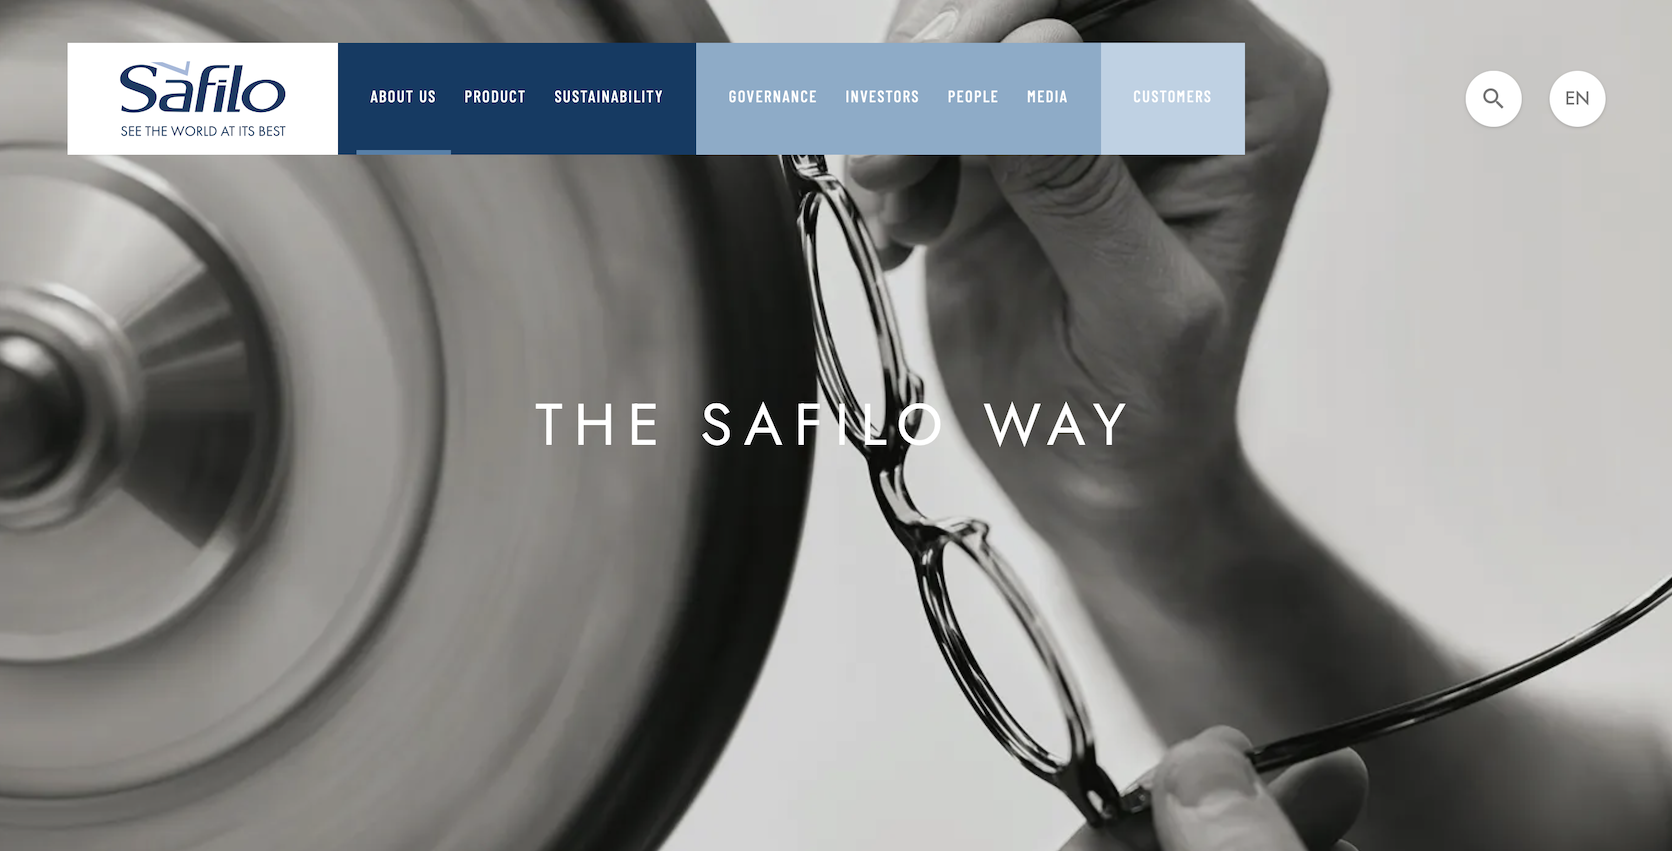 传：LVMH 集团或收购 Safilo 位于意大利的眼镜工厂